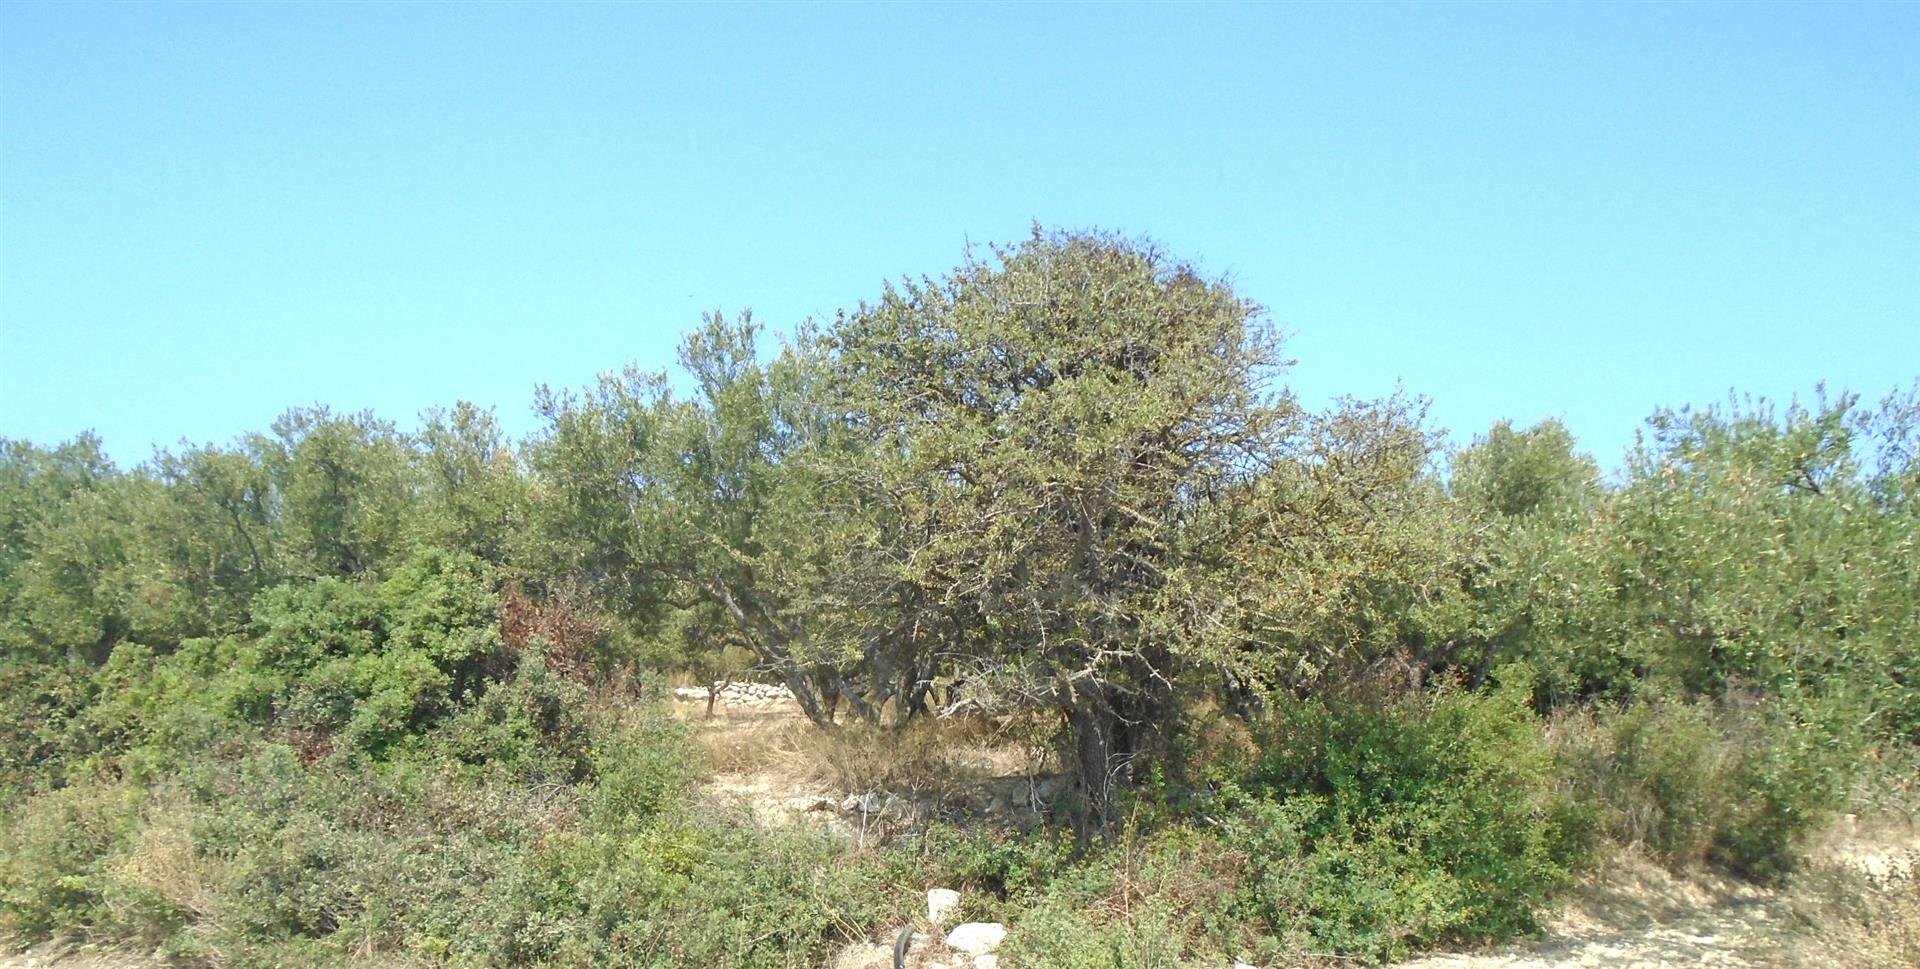 Działka budowlana z drzewami oliwnymi, widokiem na morze i góry